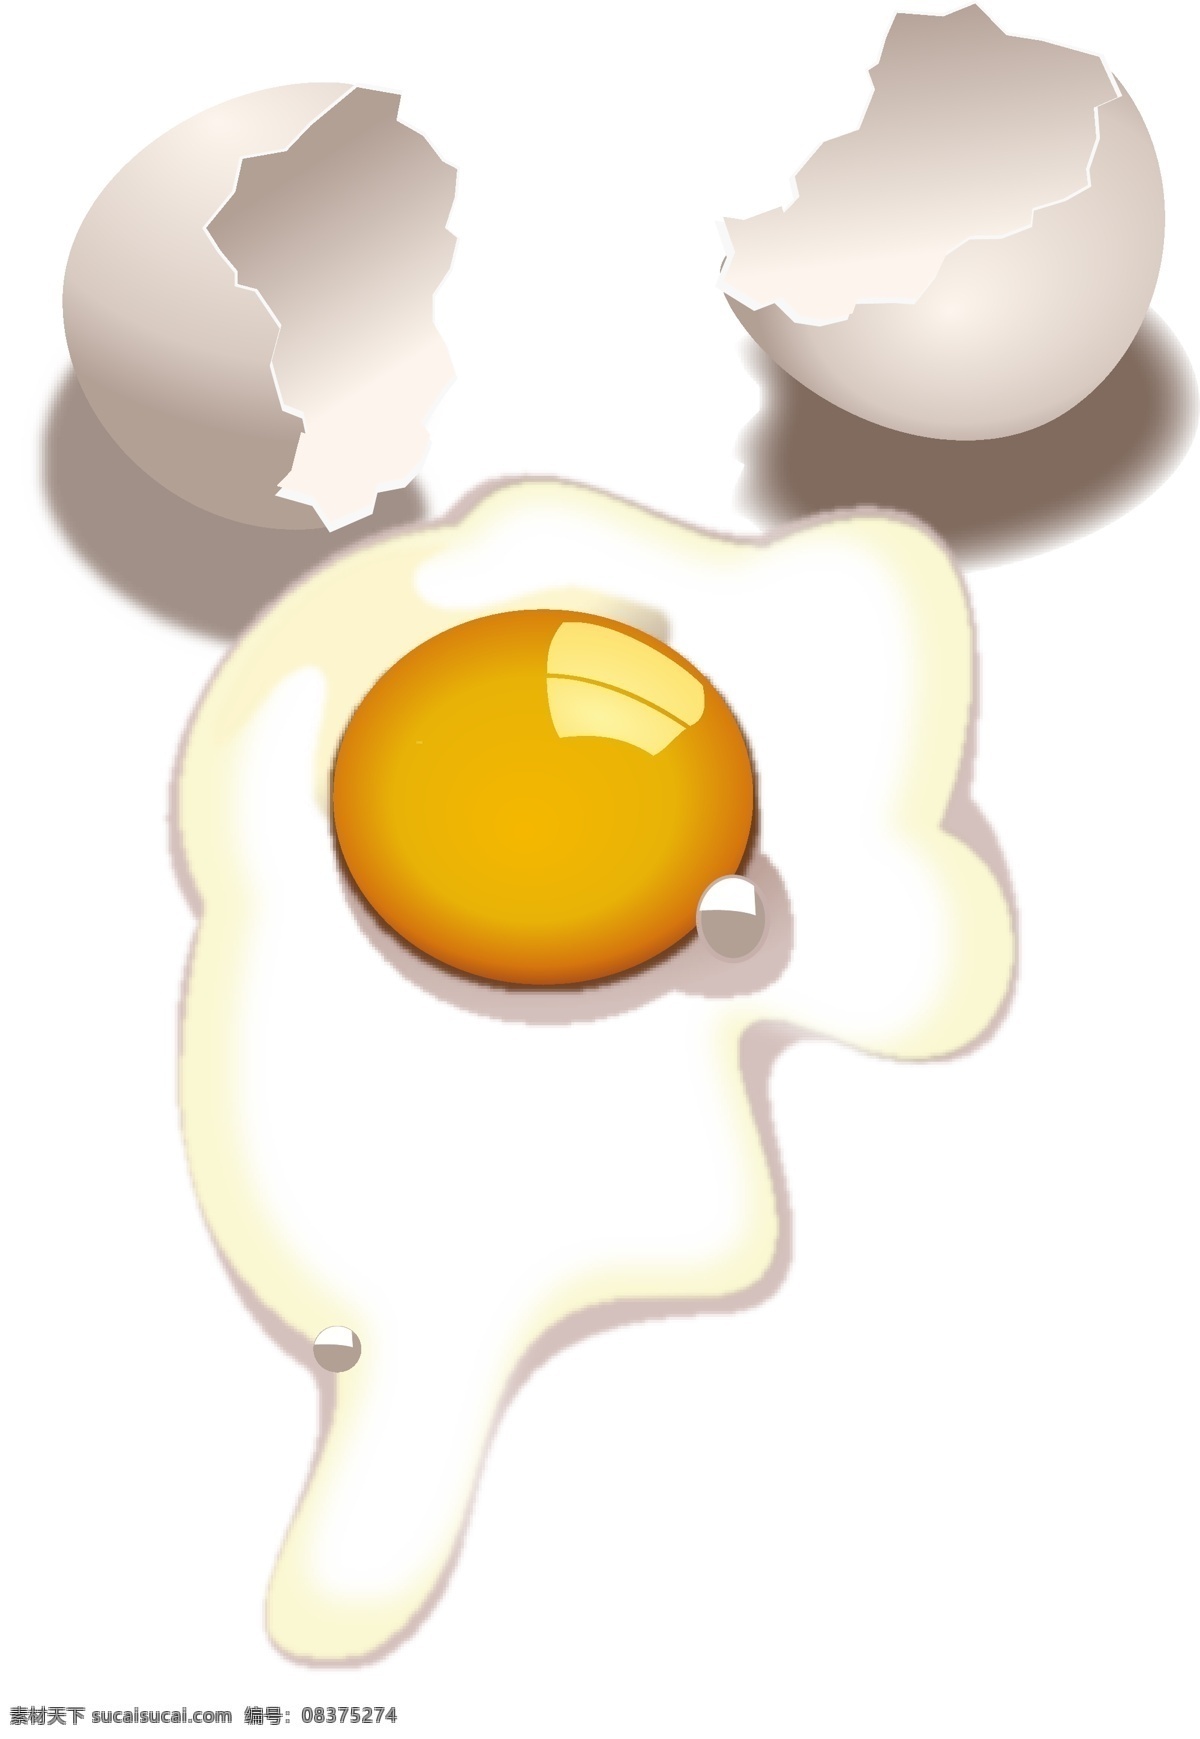 乐蛋 蛋 矢量图 可爱的蛋 欢乐 双蛋 矢量素材 其他矢量 蛋黄 蛋液 鸡蛋 生活百科 餐饮美食